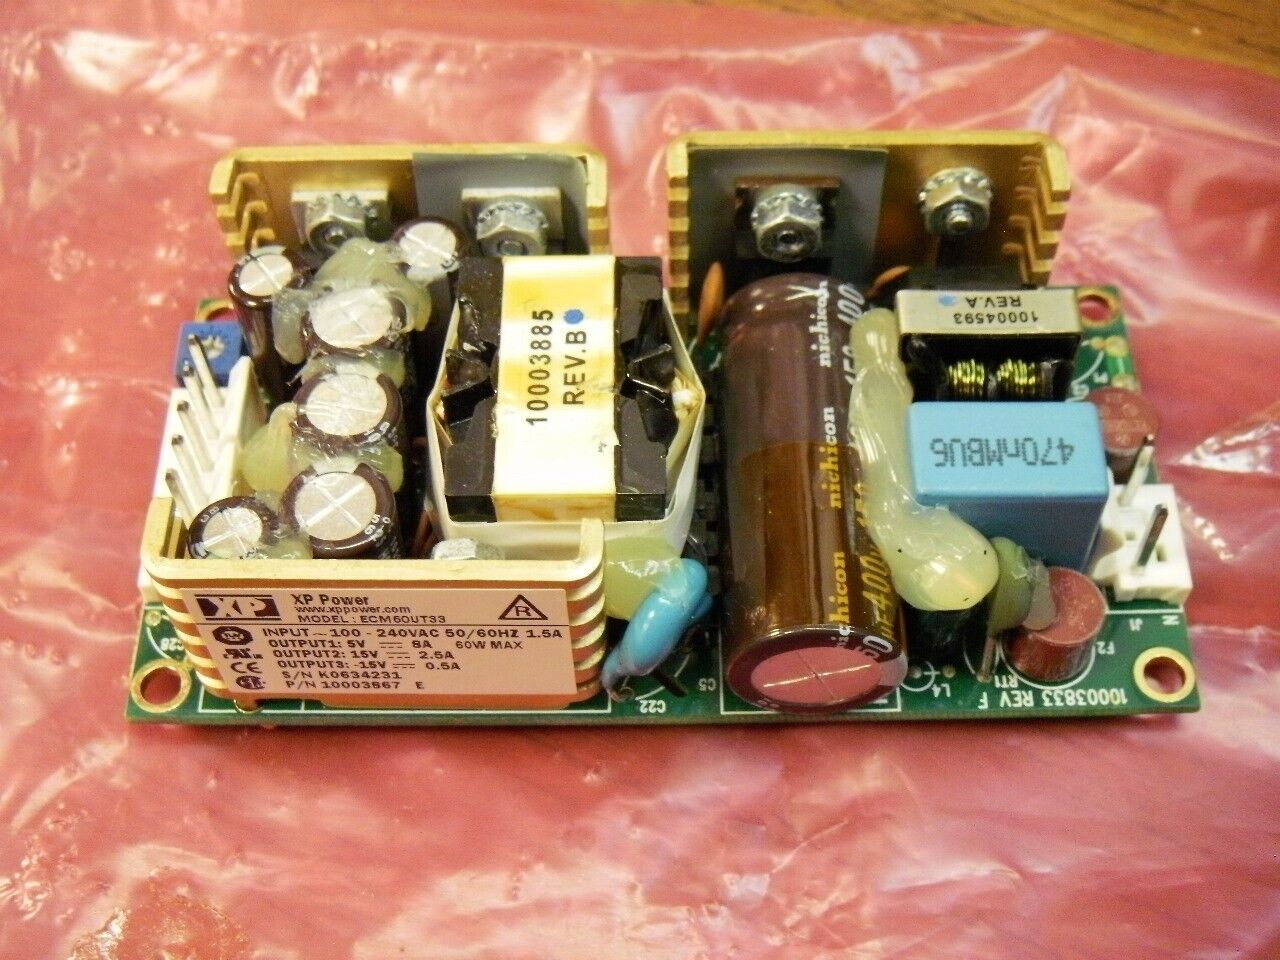 XP Power ECM60UT33 Switching Power Supply